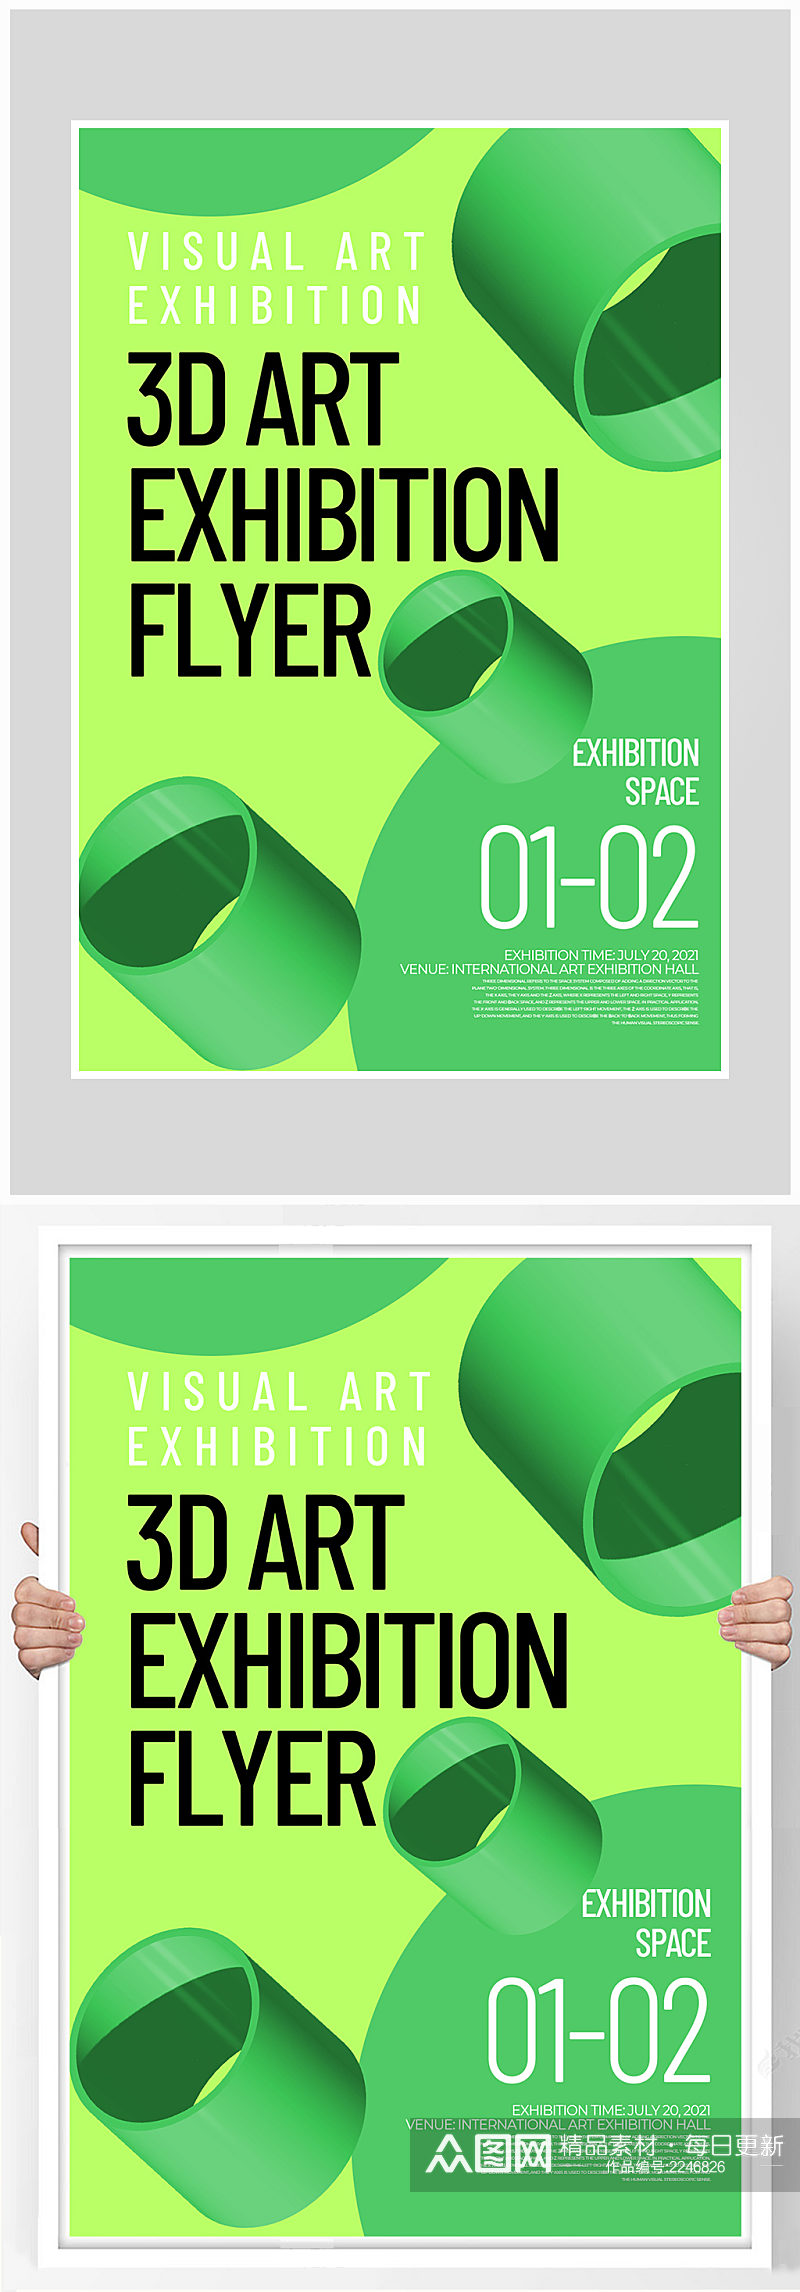 创意质感3d艺术展示海报设计素材